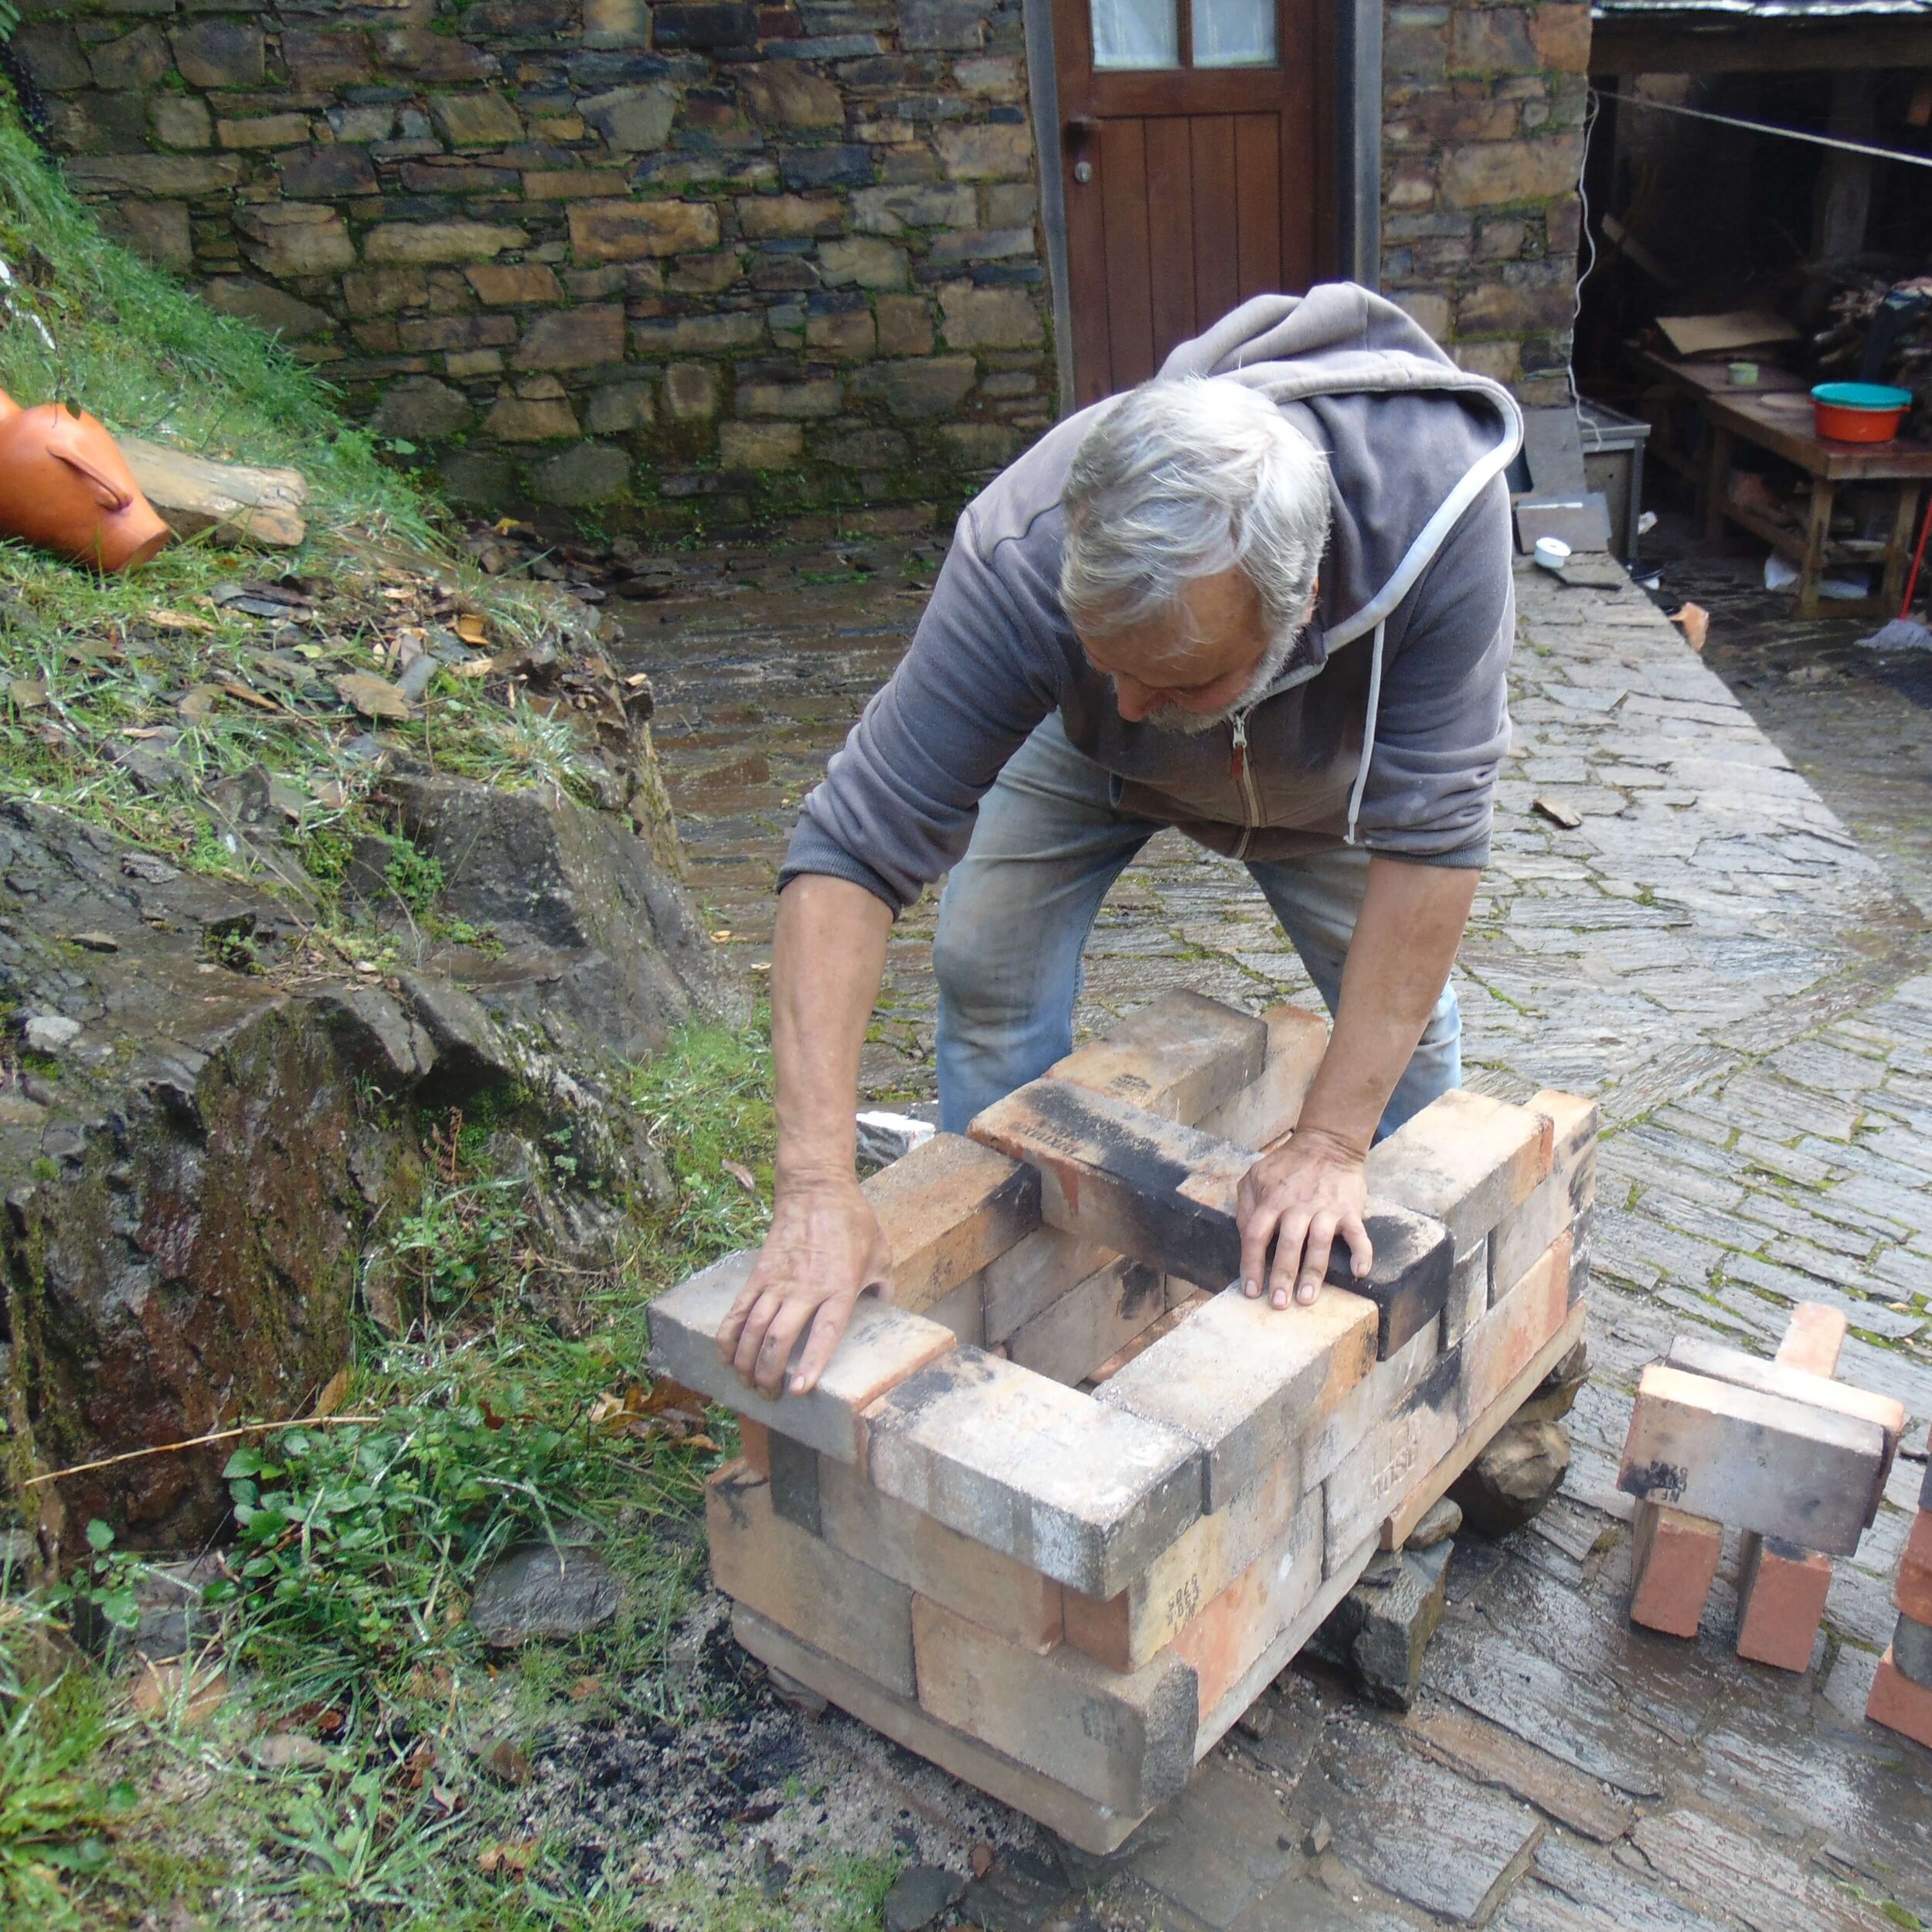 Ceramista Renato Costa e Silva a construir o seu forno rudimentar